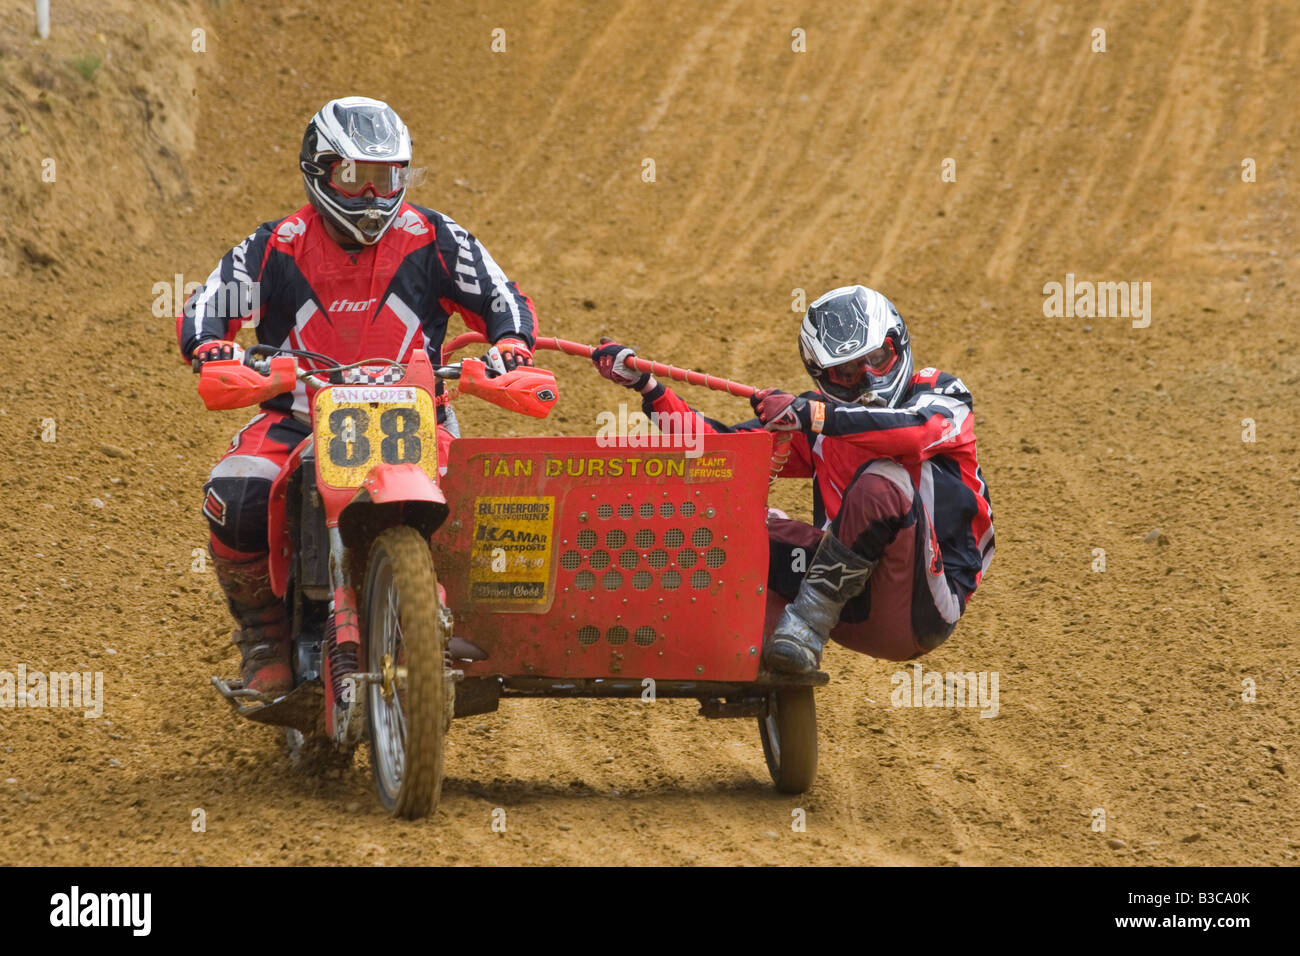 Sidecar Motocross racers sur angle approche piste sablonneuse Banque D'Images